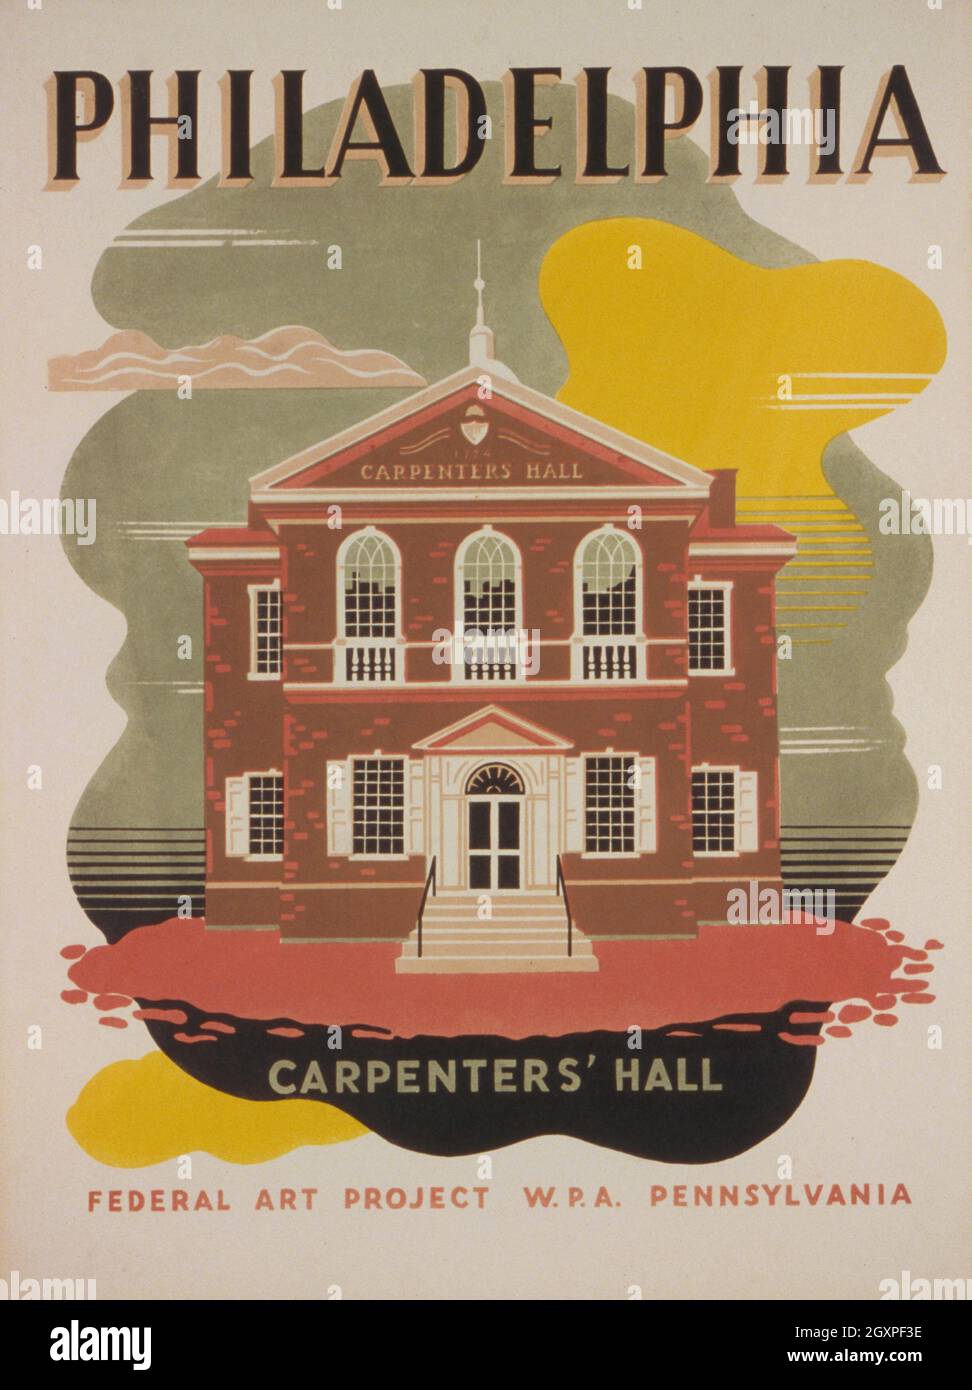 Philadelphia - Carpenters' Hall Stock Photo